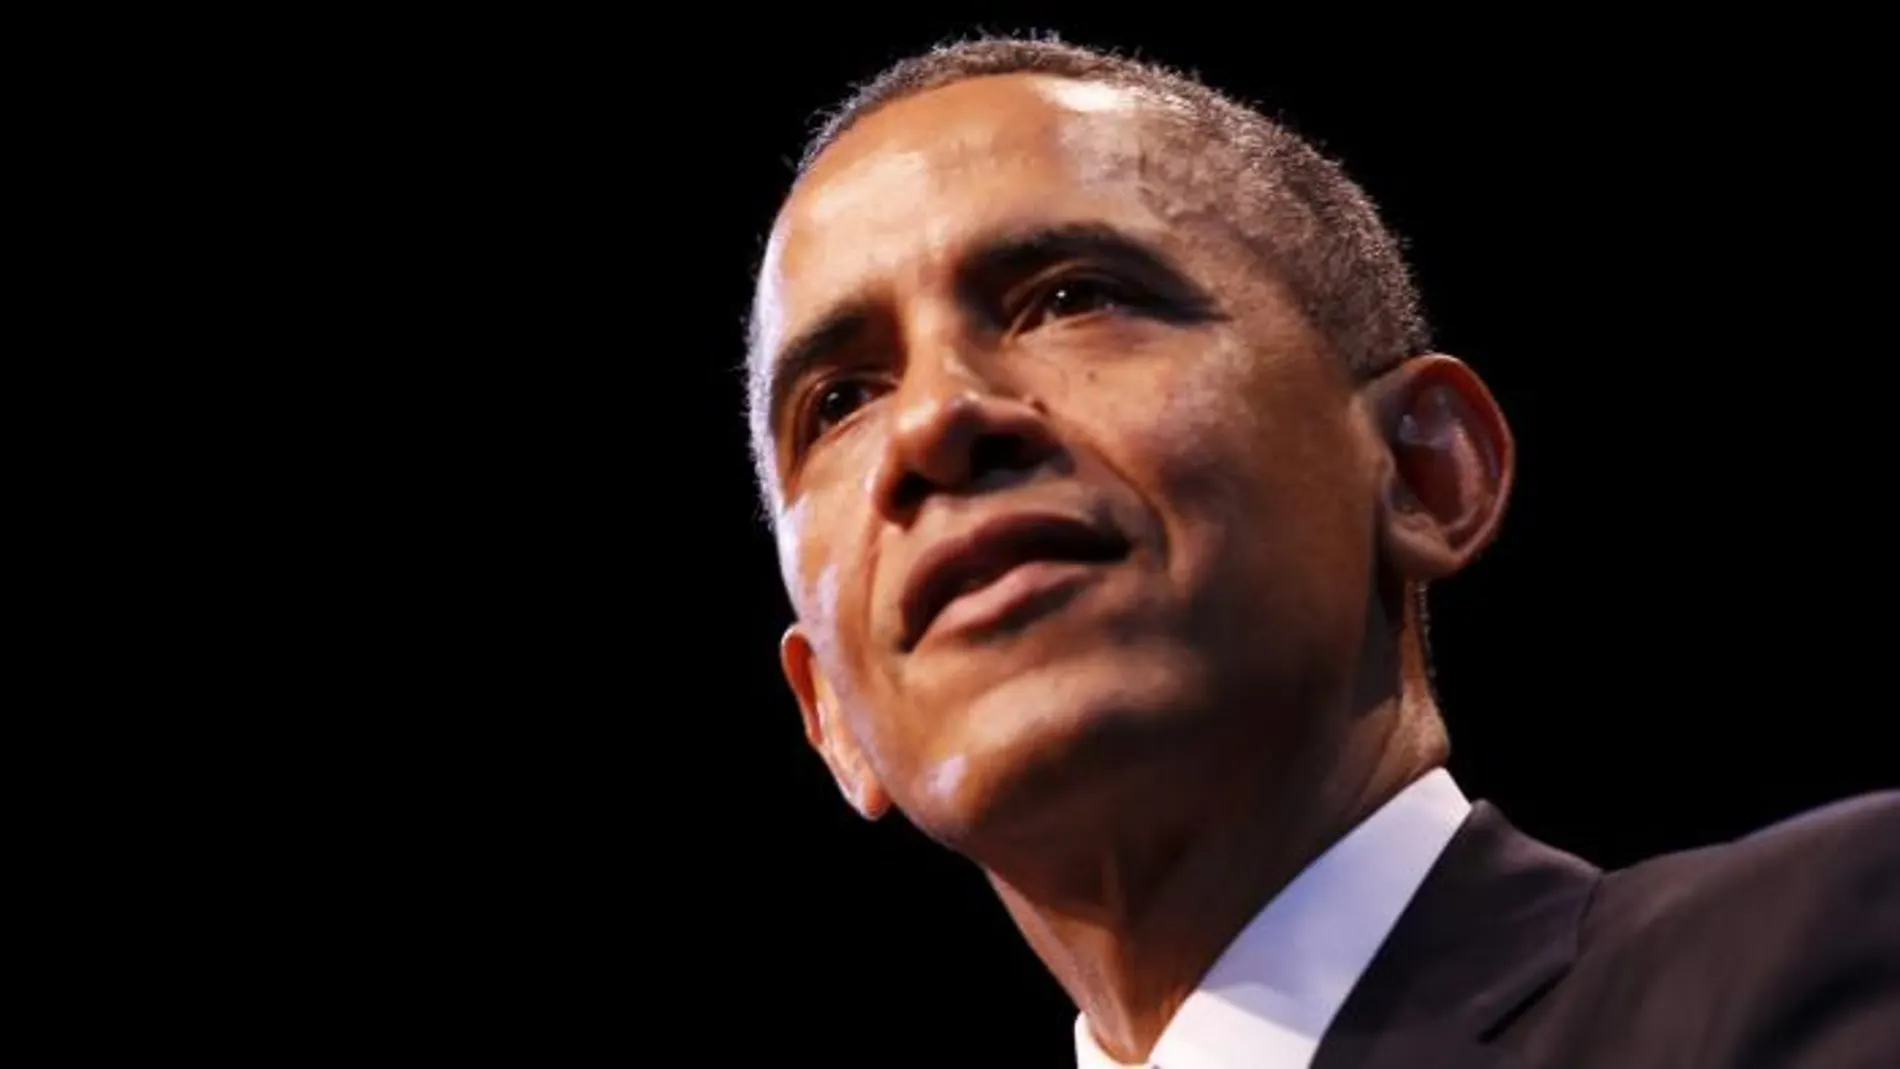 El presidente de Estados Unidos Barack Obama pronuncia unas palabras sobre economía durante un discurso pronunciado en el Center for American Progress en Washington, DC, EE.UU., el 4 de diciembre de 2013.